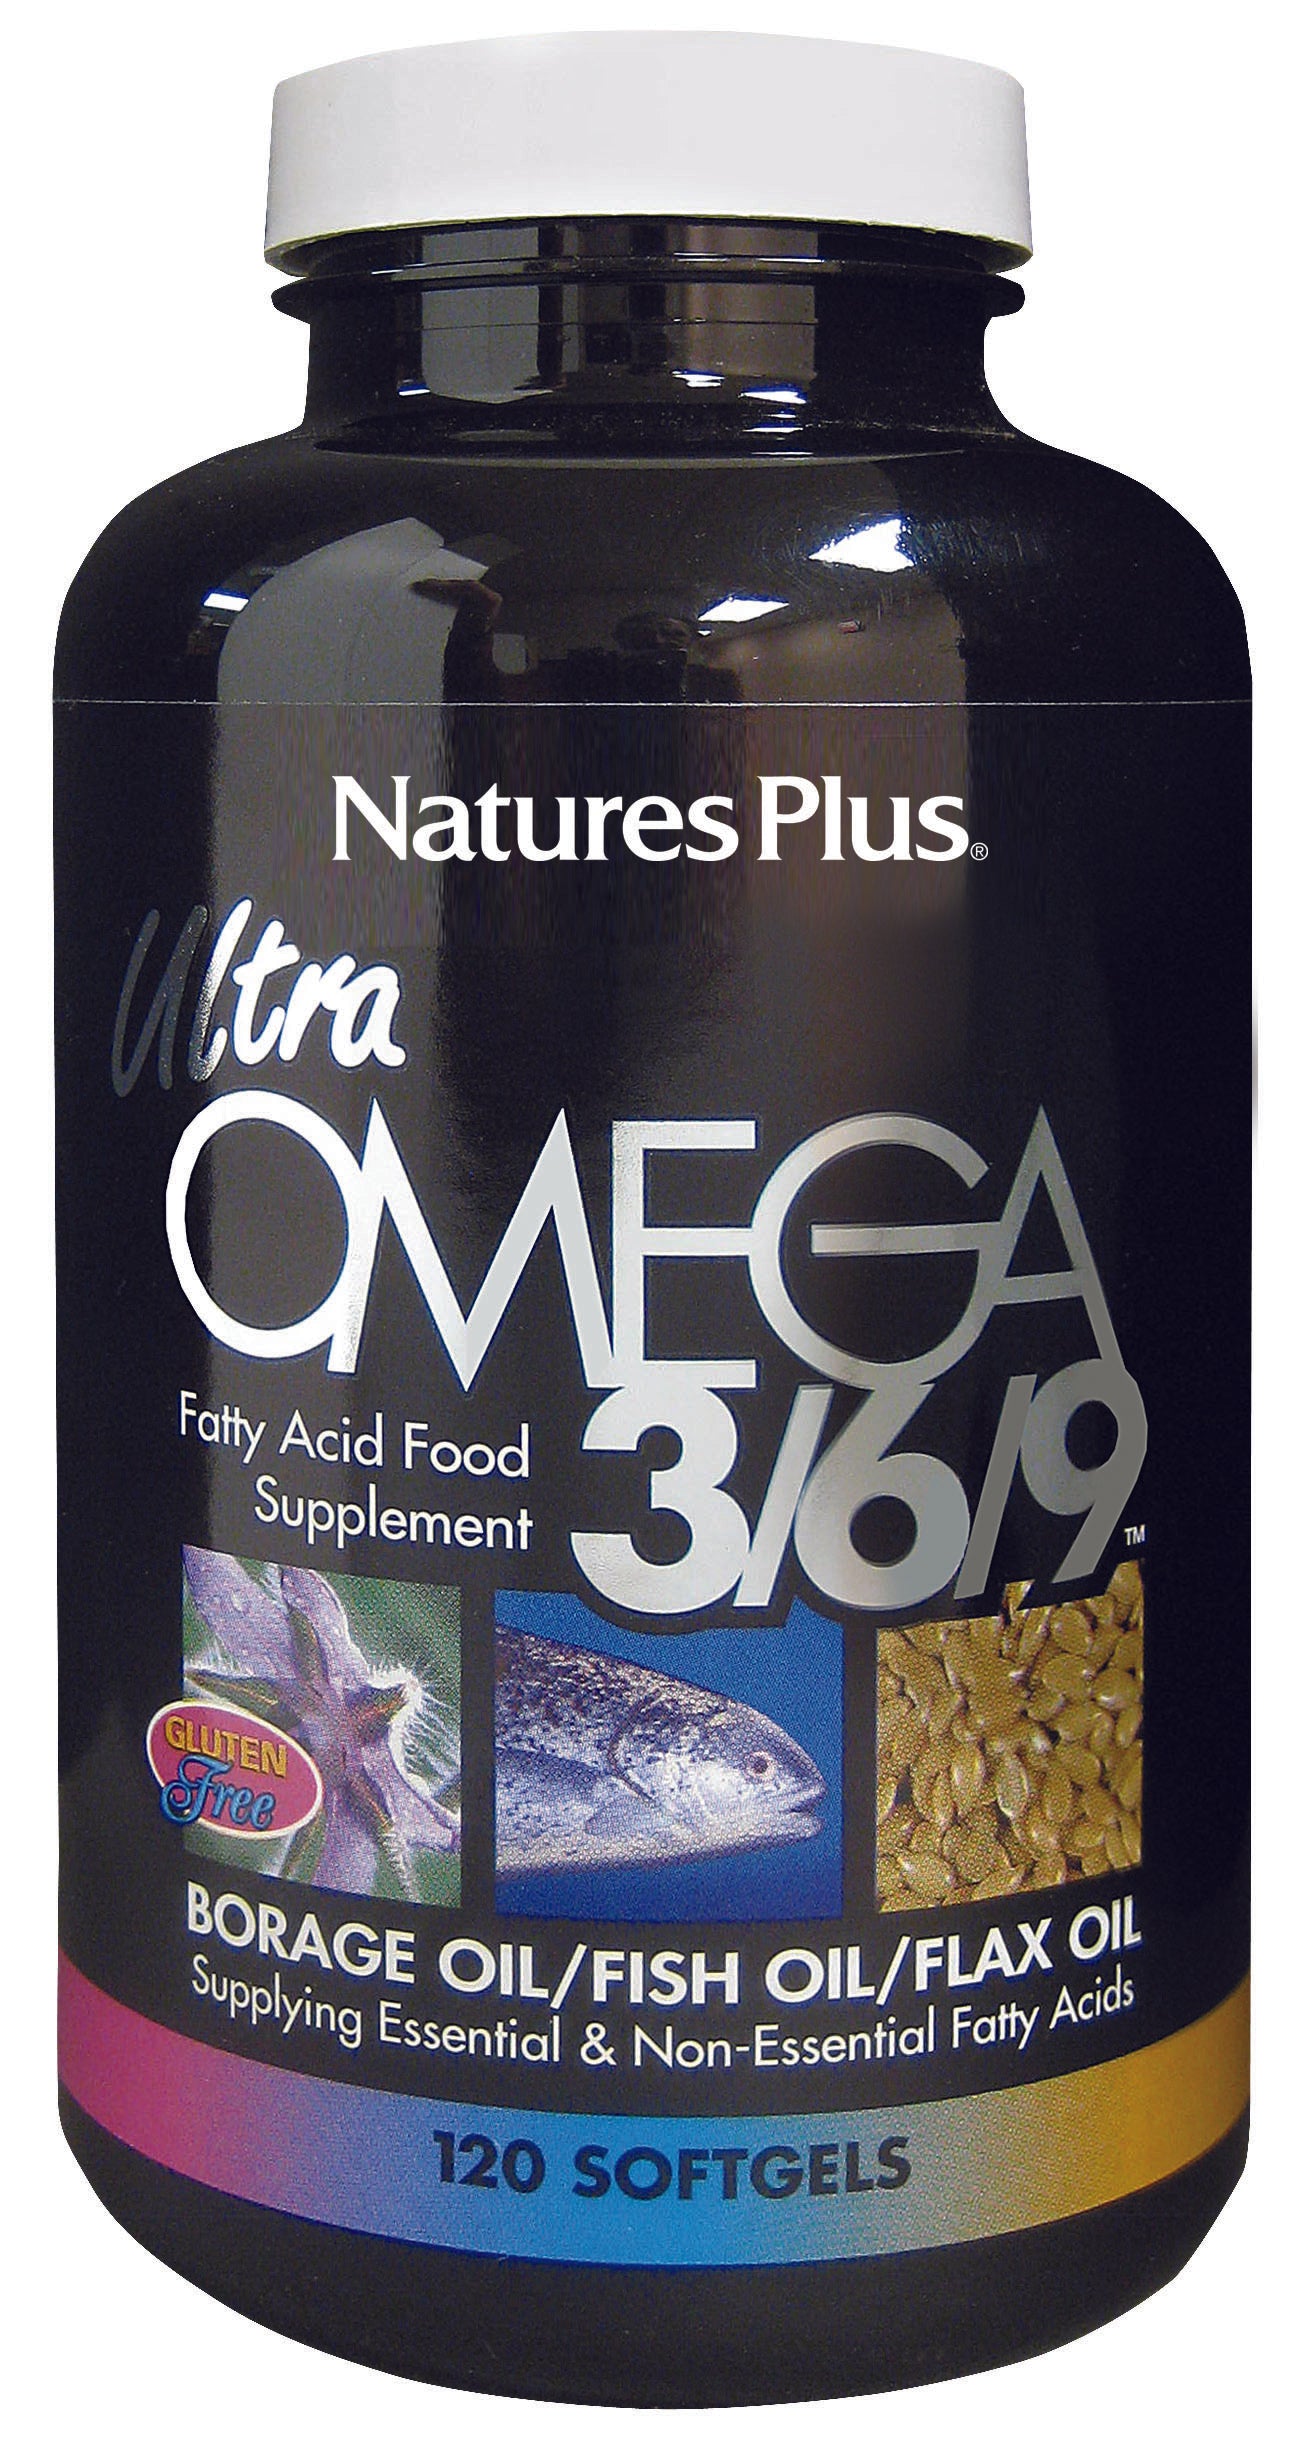 Nature's Plus Ultra Omega 3/6/9 Softgels